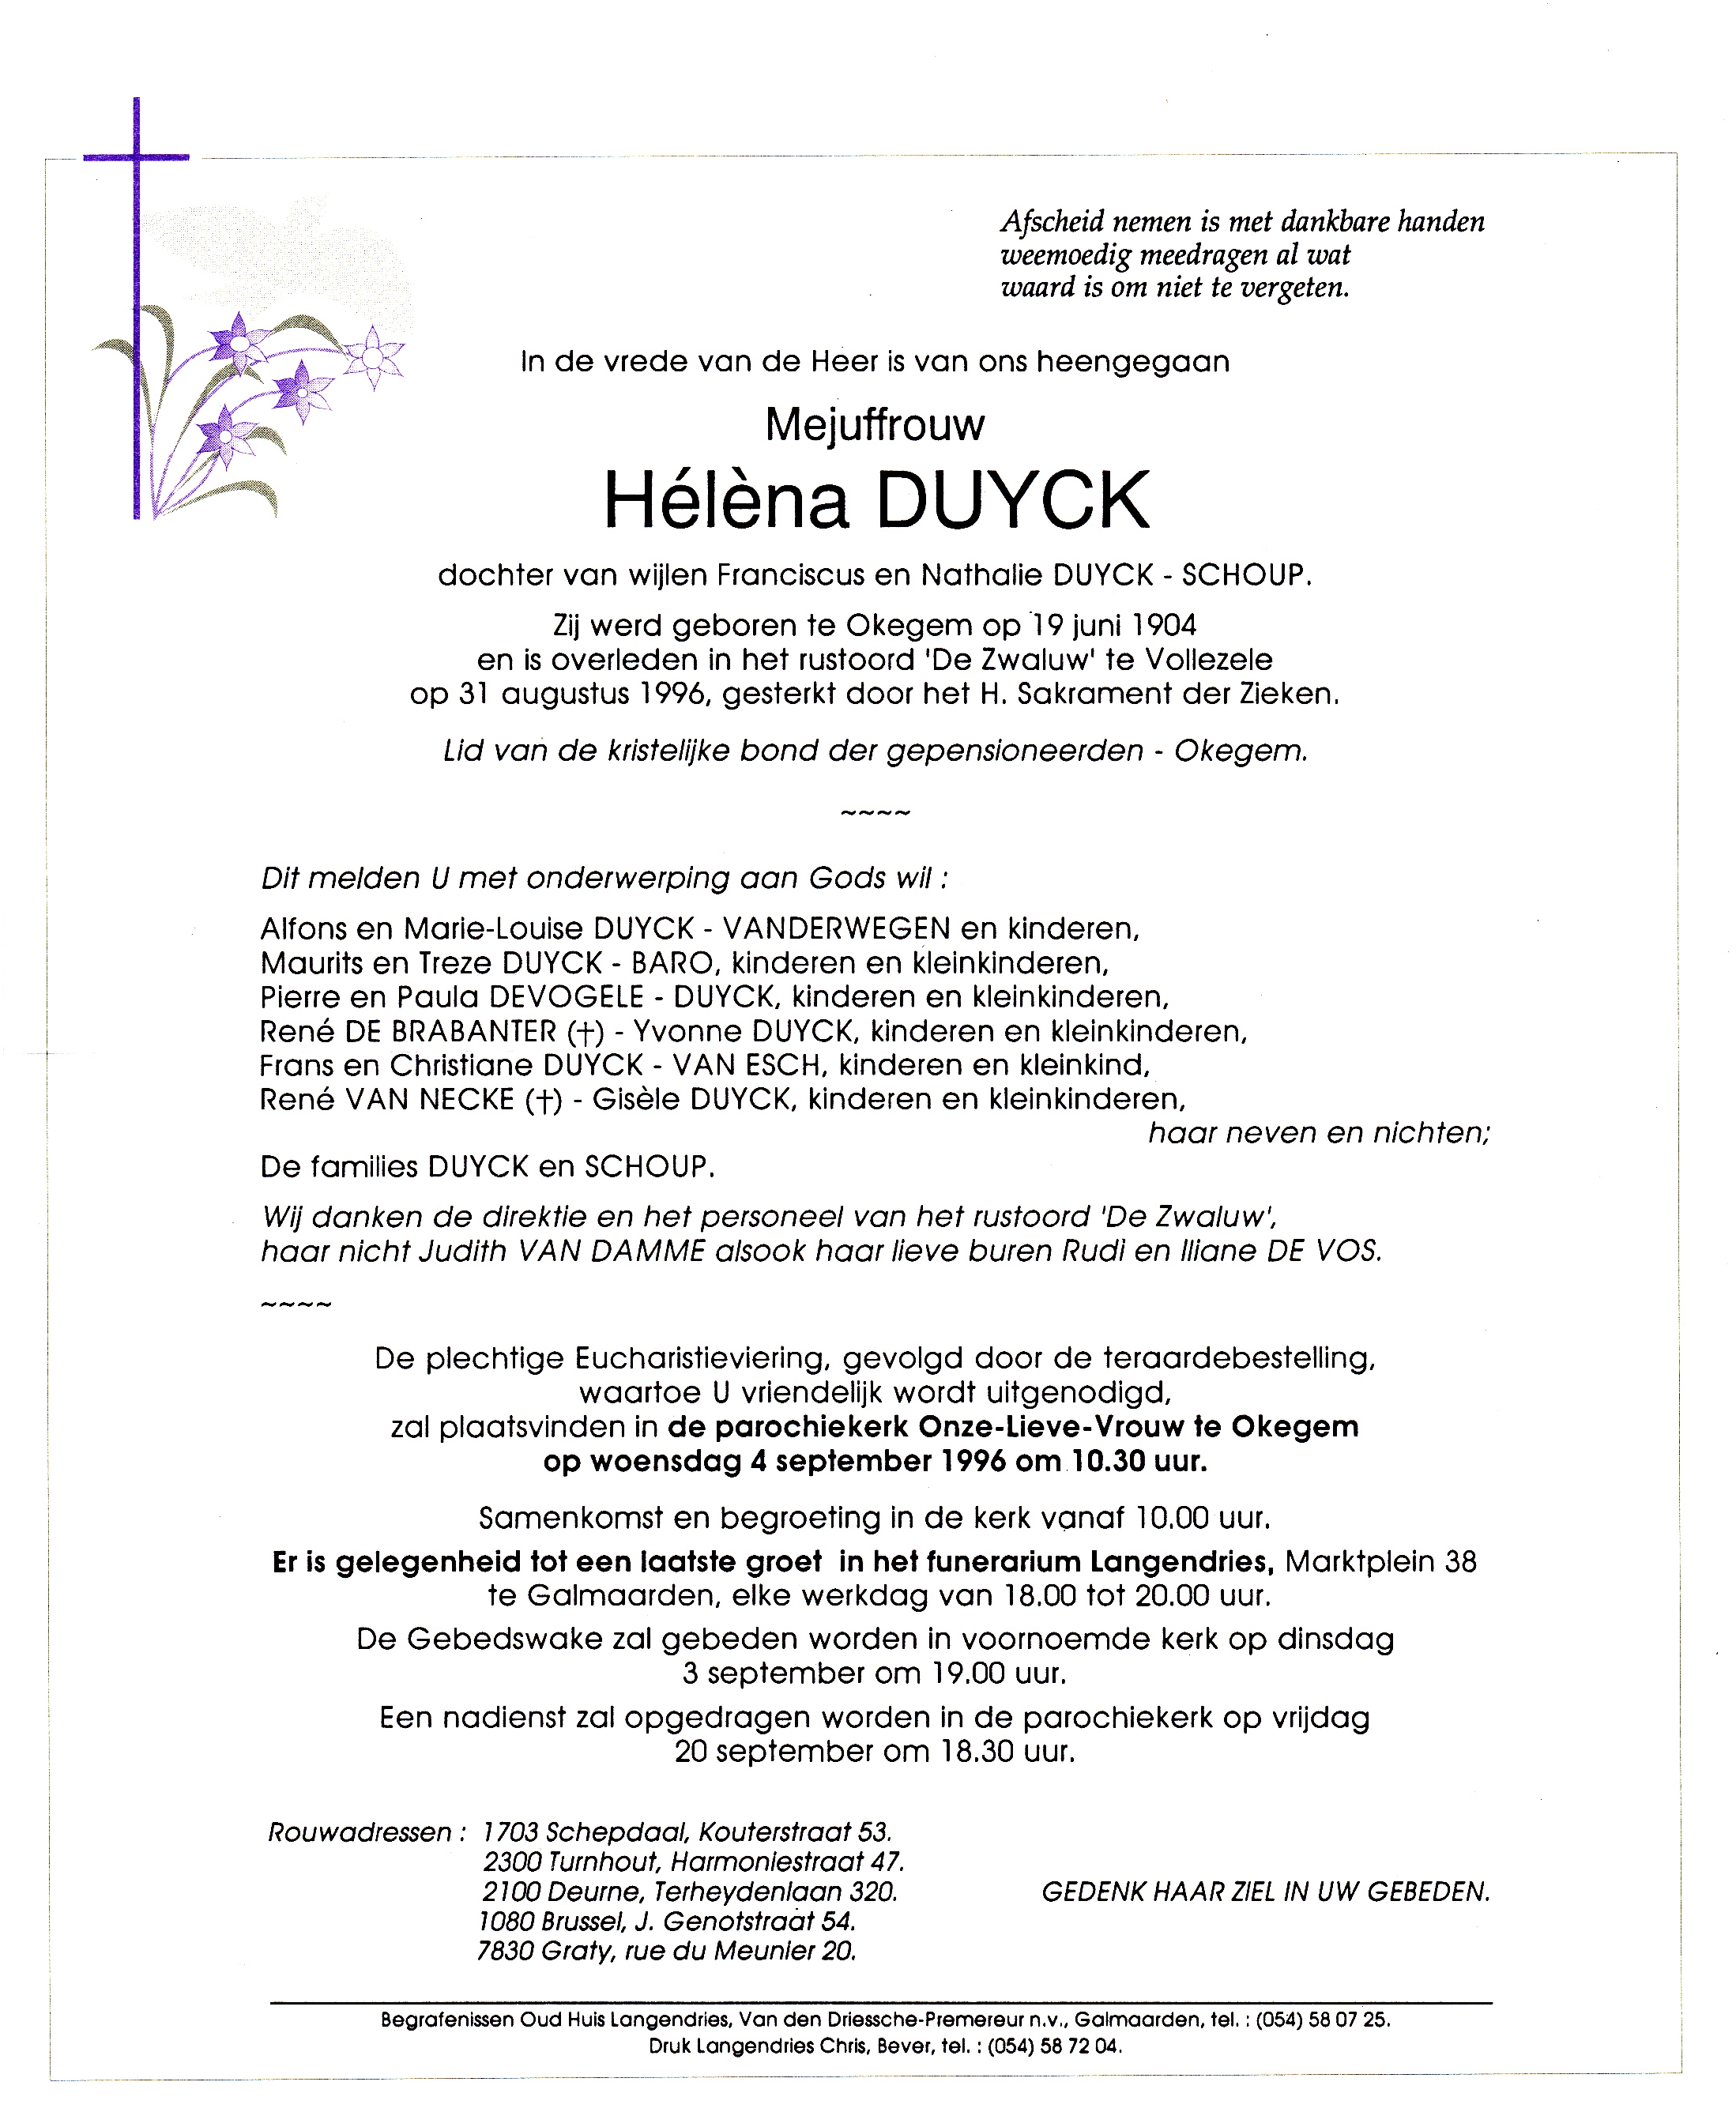 Duyck Helena 